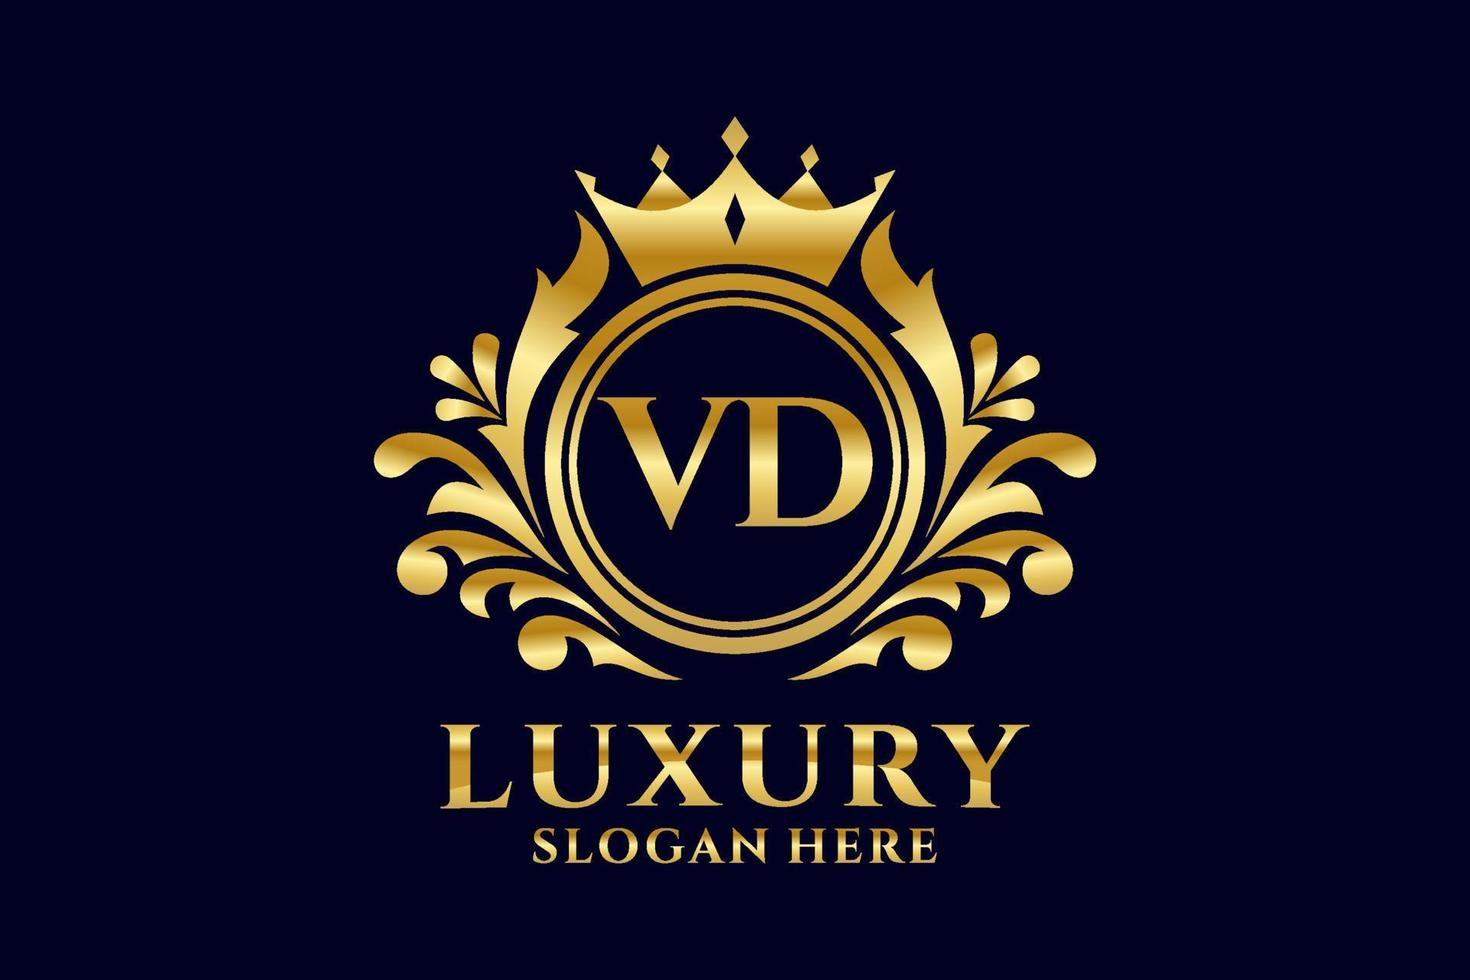 Royal Luxury Logo-Vorlage mit anfänglichem VD-Buchstaben in Vektorgrafiken für luxuriöse Branding-Projekte und andere Vektorillustrationen. vektor